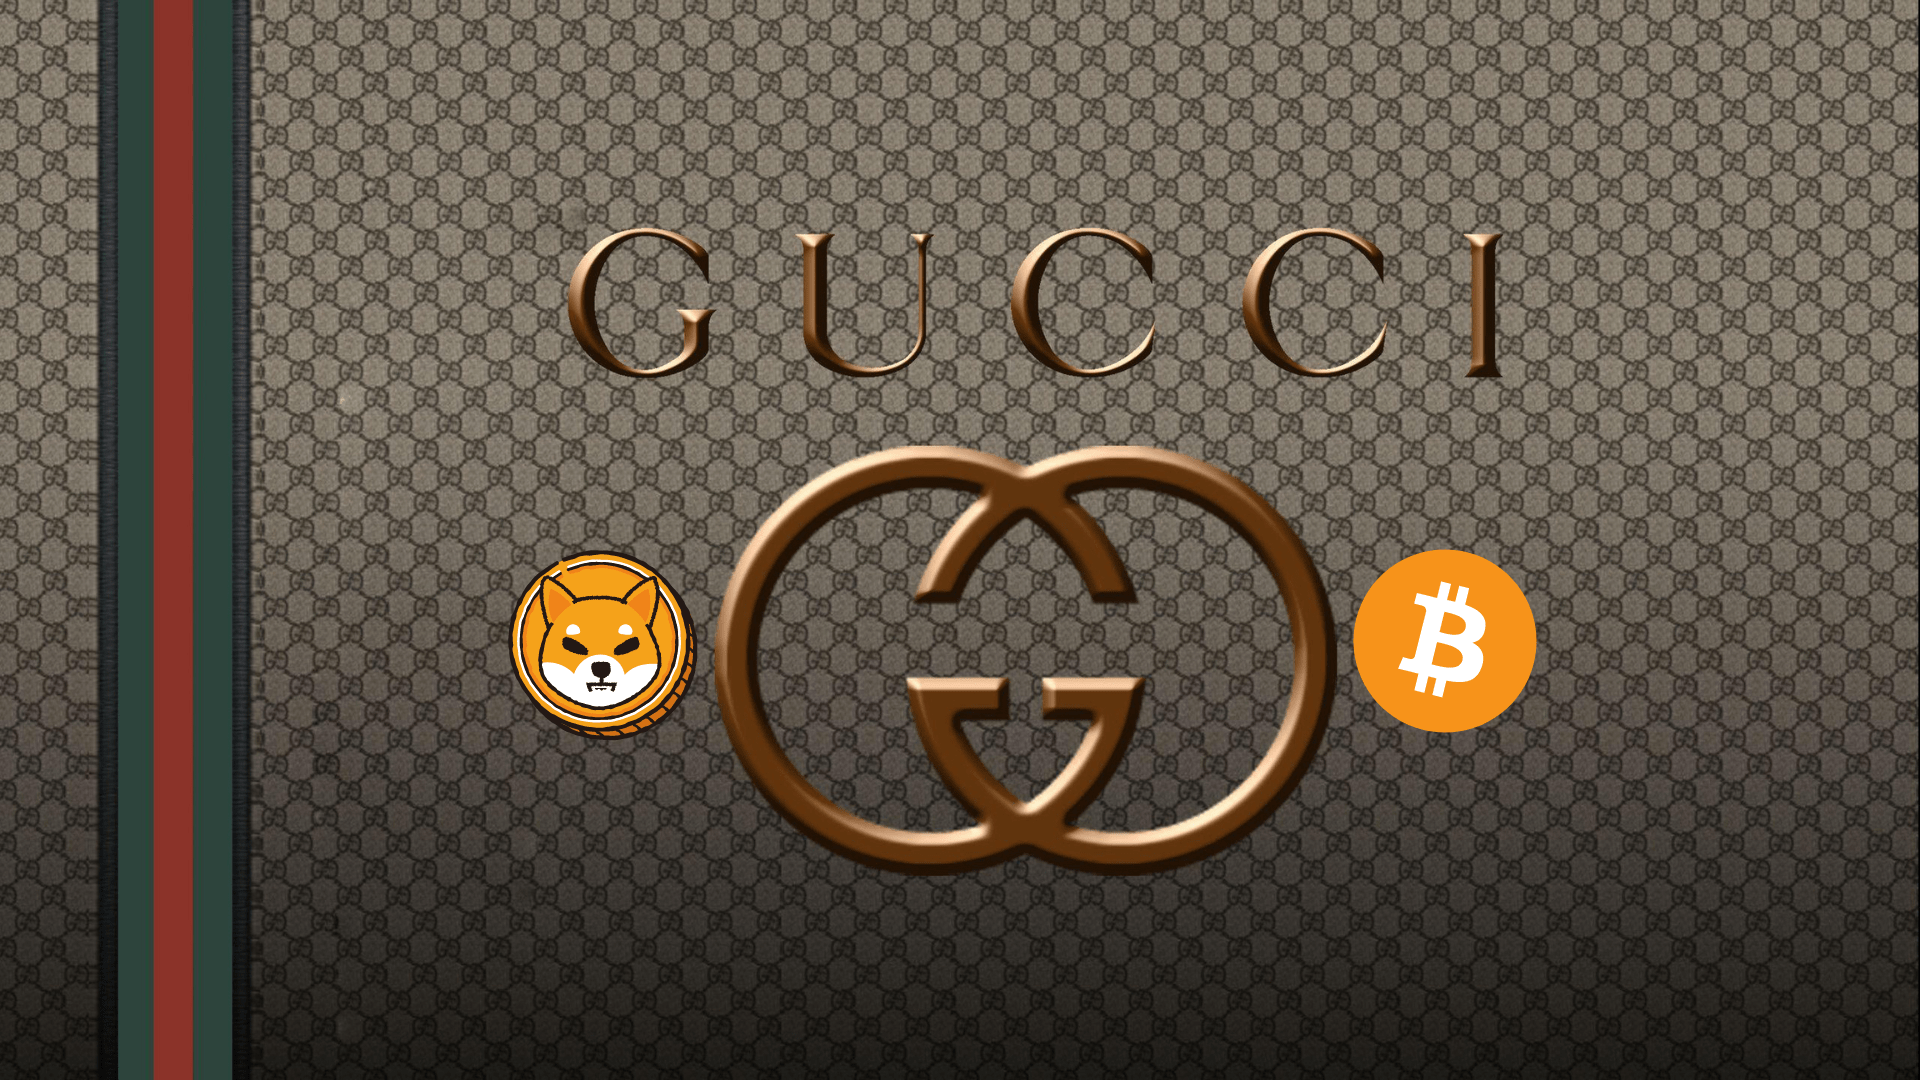  Gucci – naujausias prabangos prekės ženklas, priimantis kriptovaliutų mokėjimus parduotuvėje